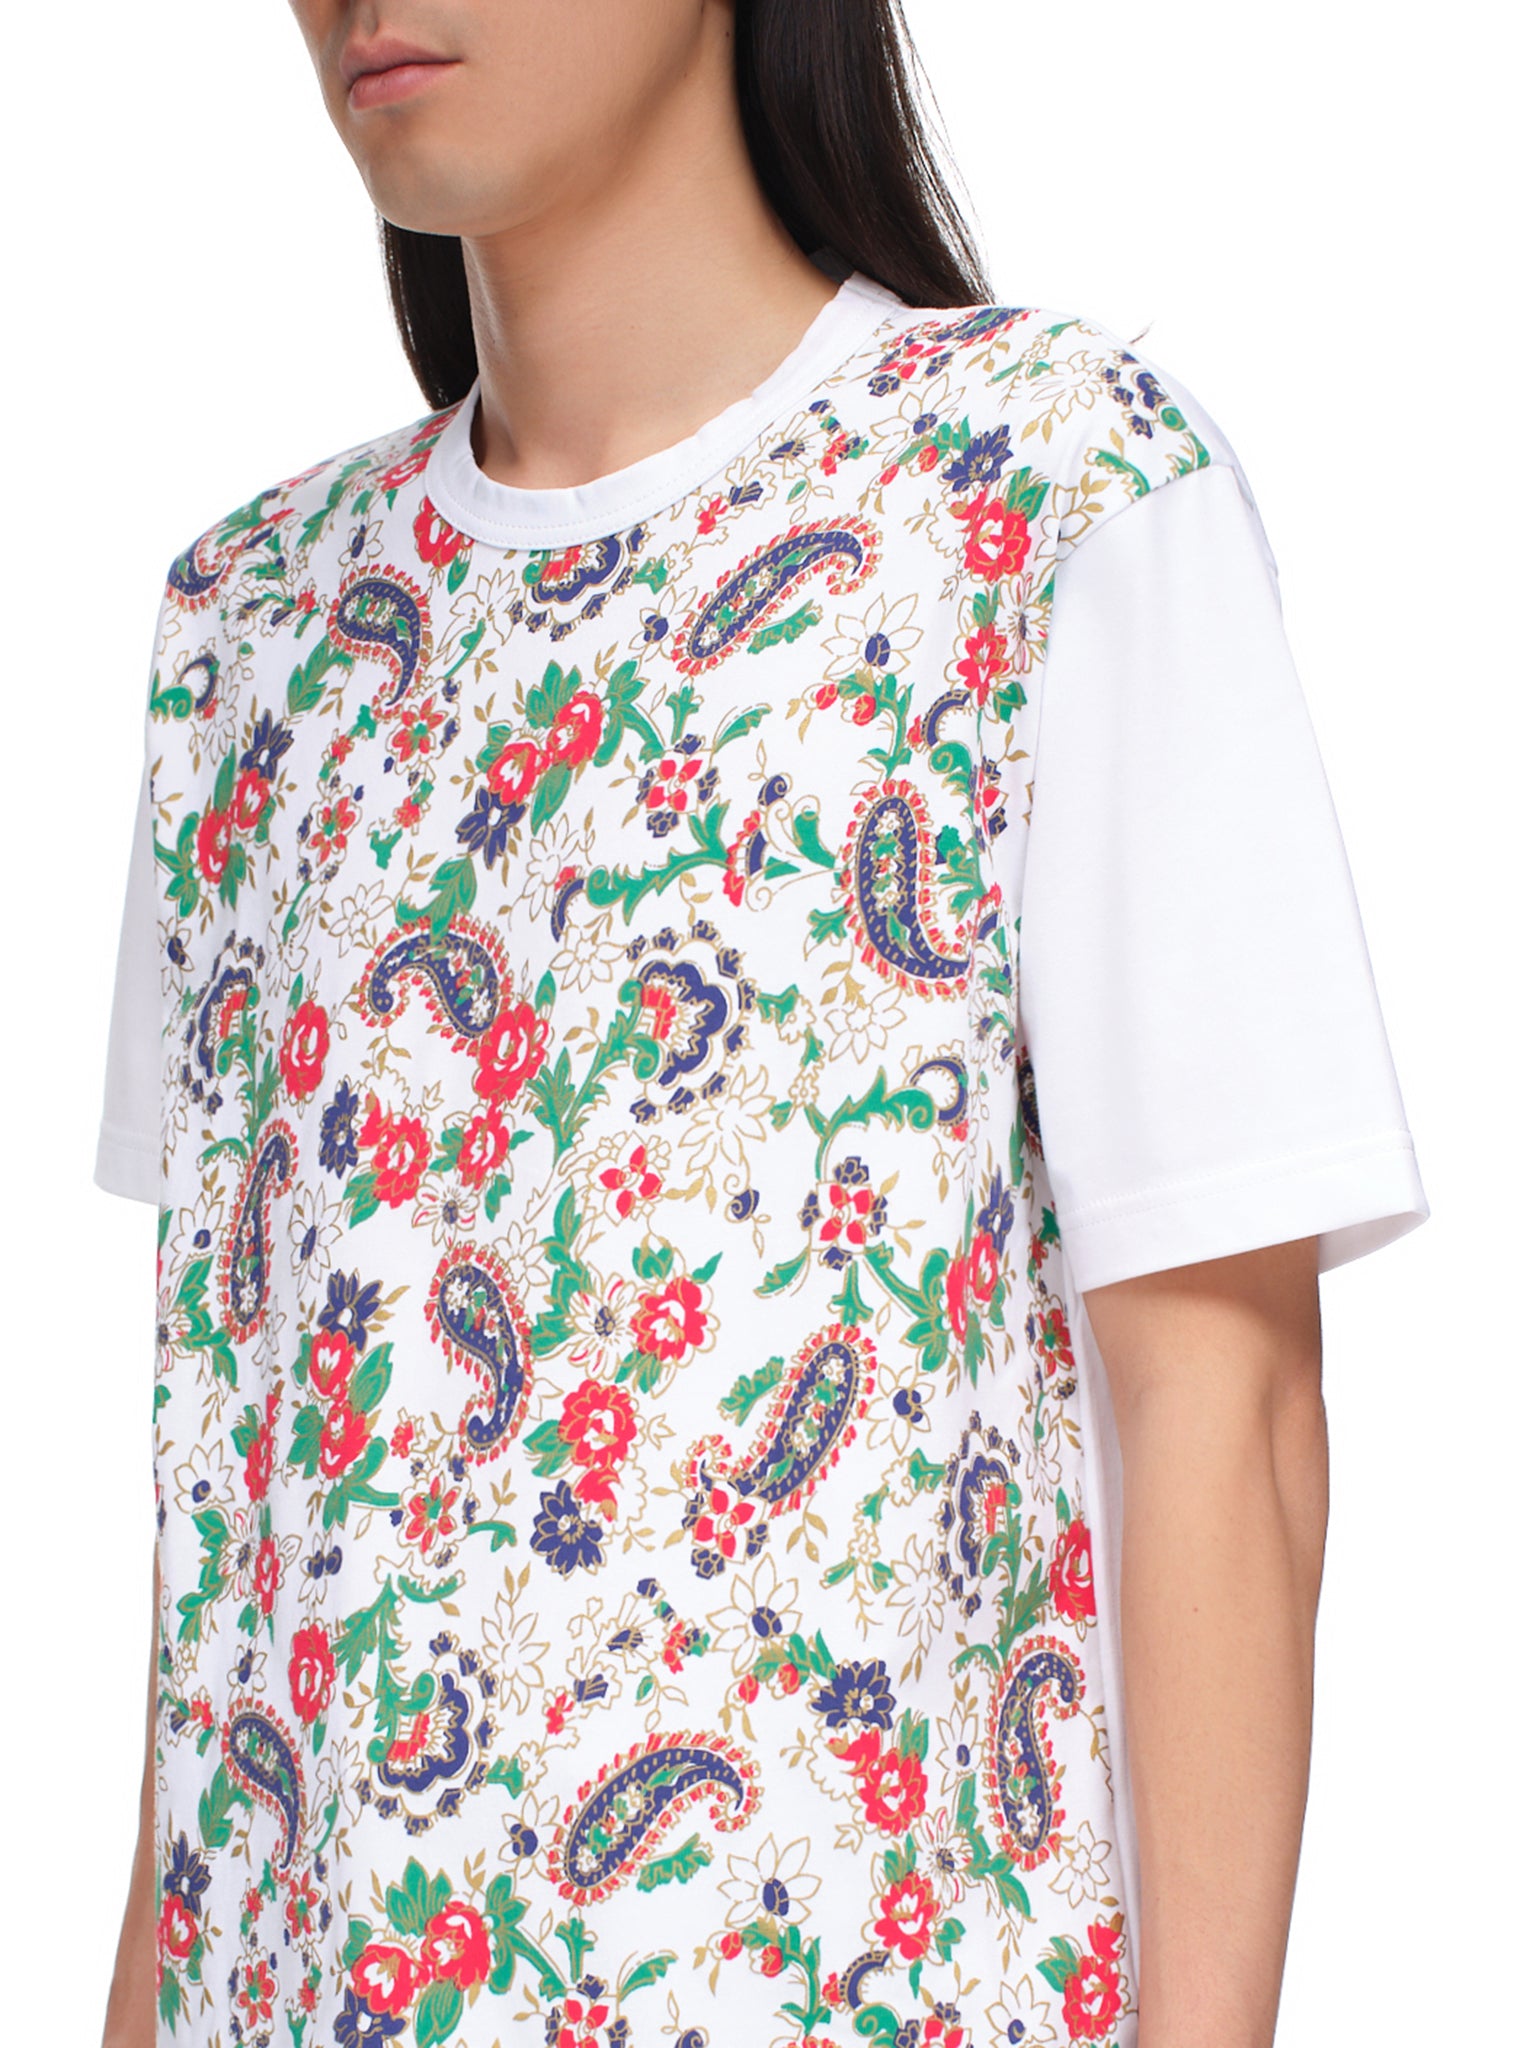 Junya Watanabe Paisley Shirt | H. Lorenzo - detail 